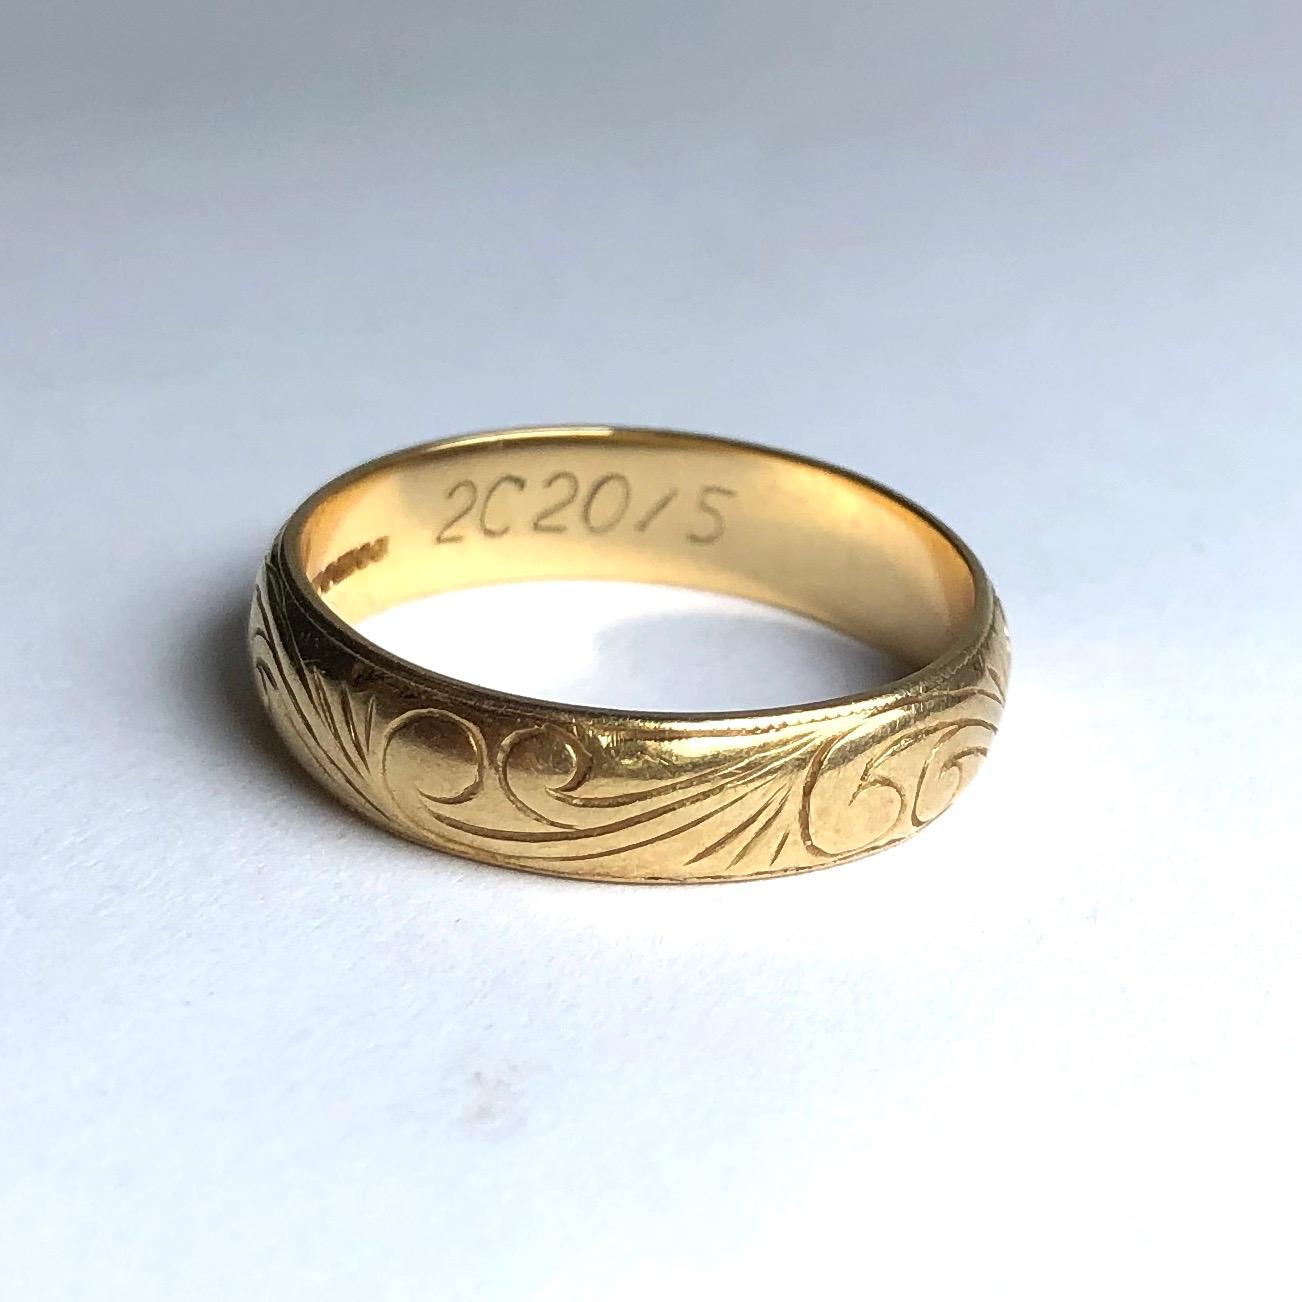 Das 18-karätige Goldband ist mit einer feinen Schnörkelgravur versehen, die auf beiden Seiten des Bandes von einer feinen Linie eingerahmt wird. 

Ringgröße: P 1/2 oder 7 3/4
Bandbreite: 5mm 

Gewicht: 4,5 g